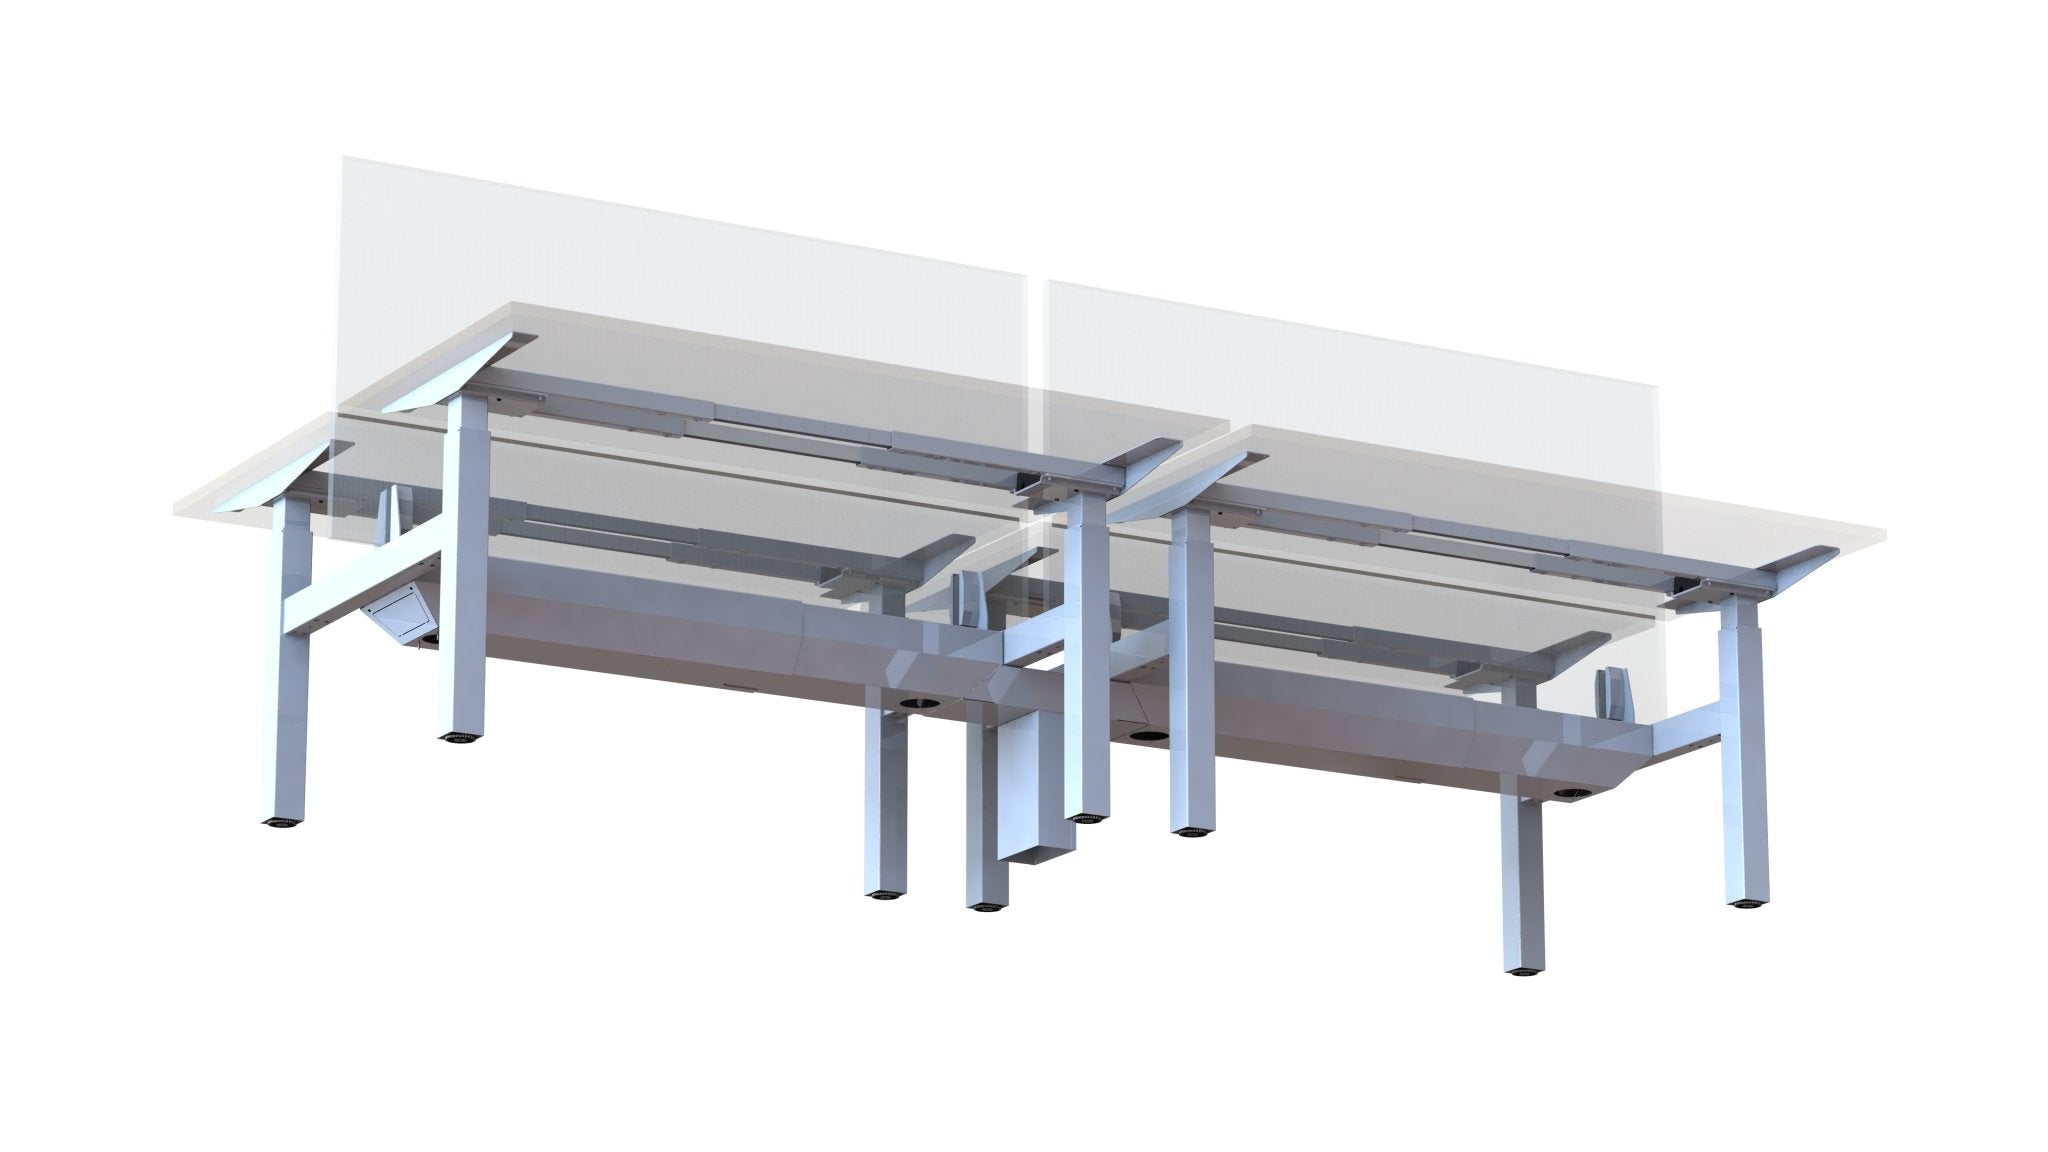 Steelforce Pro 370 SLS Bench - Dubbel Zit Sta Bureau - PMS Projectinrichting